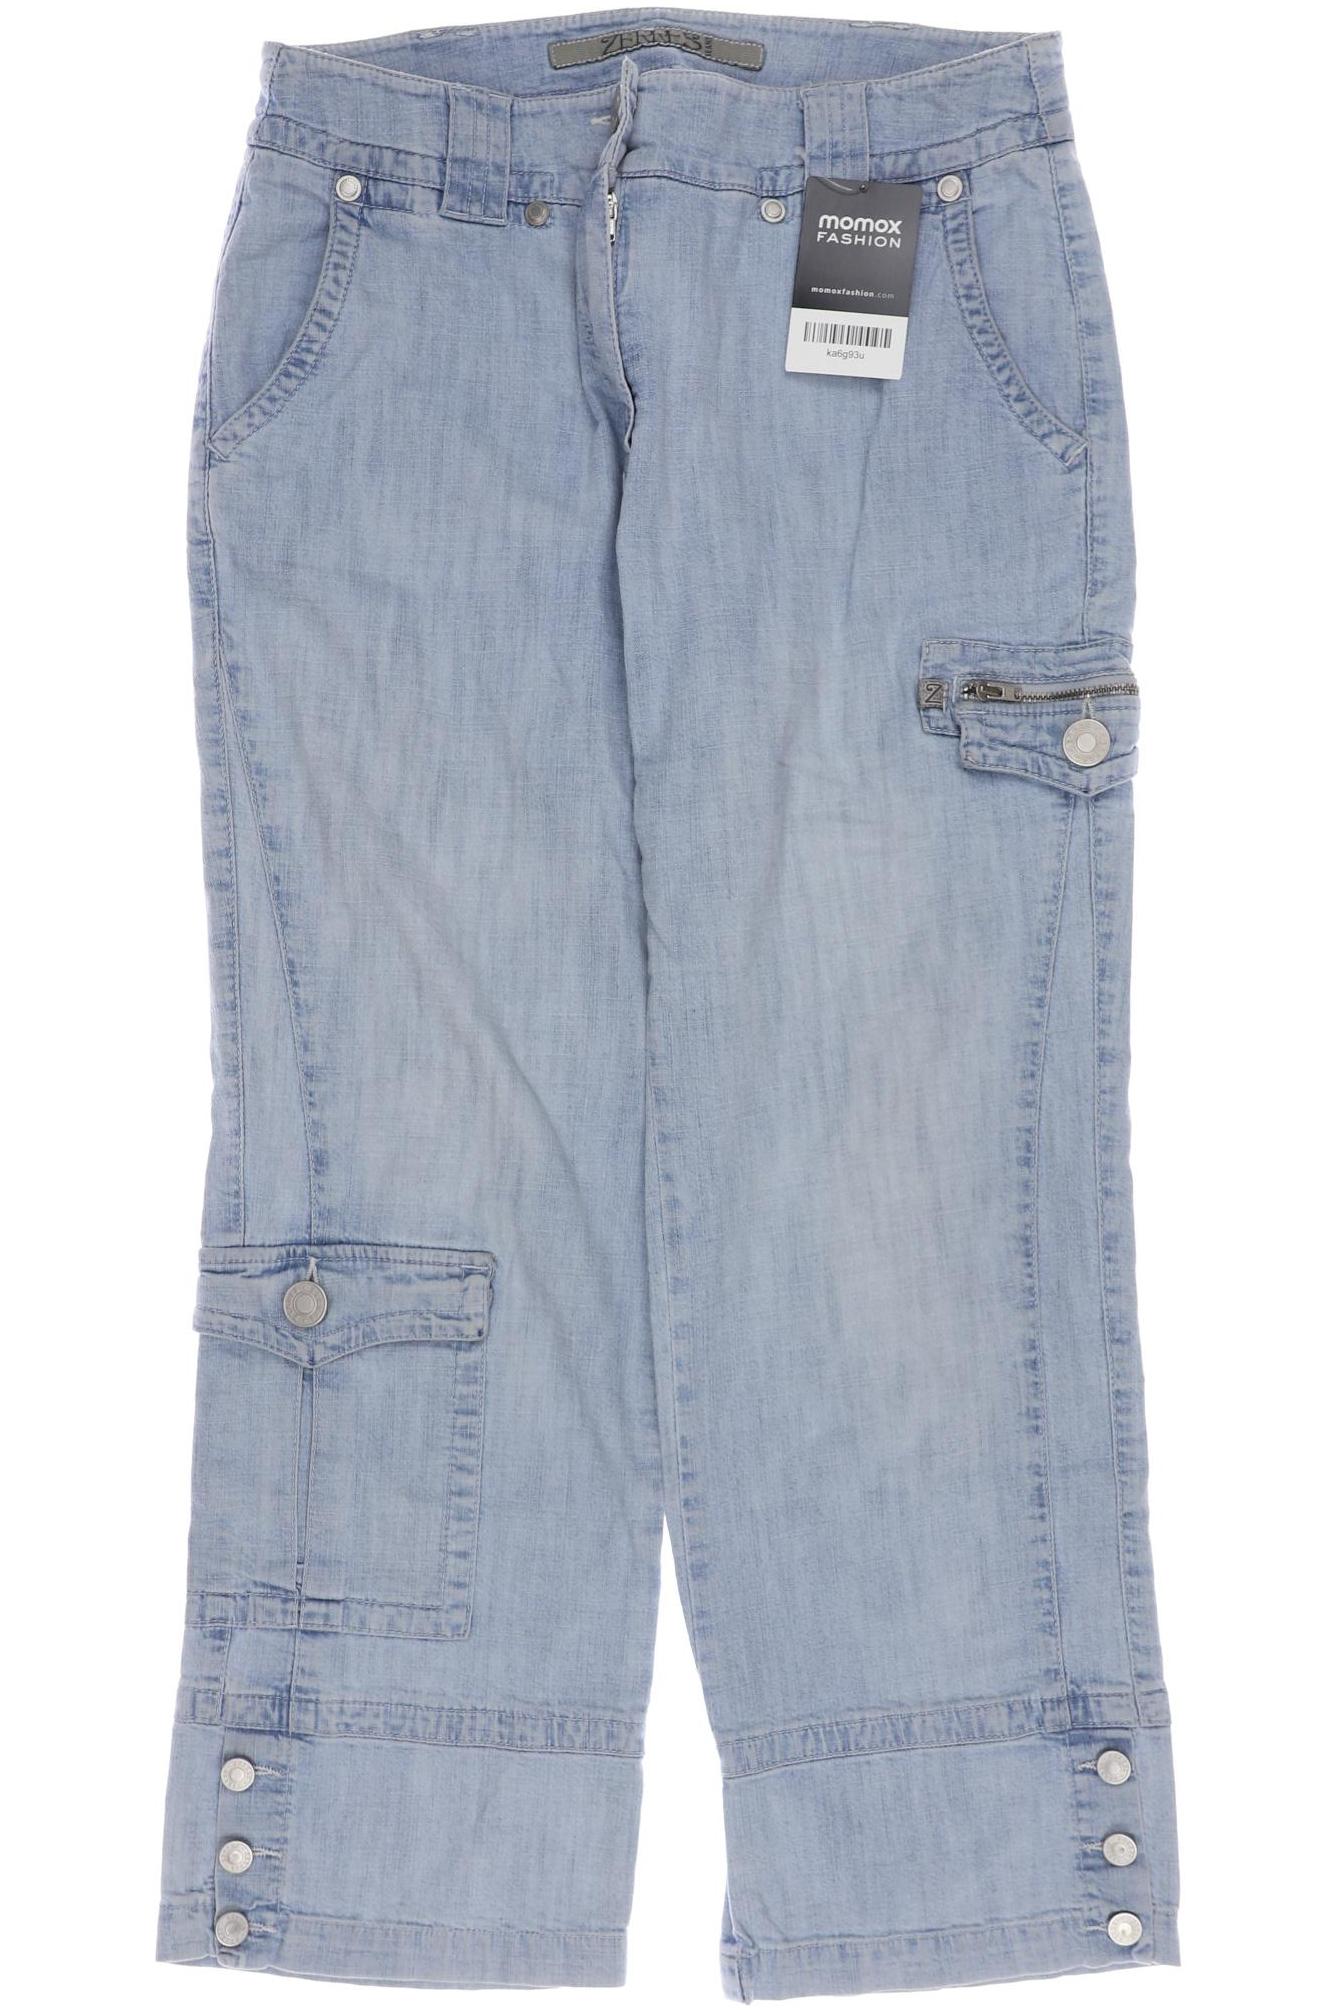 ZERRES Damen Jeans, hellblau von ZERRES